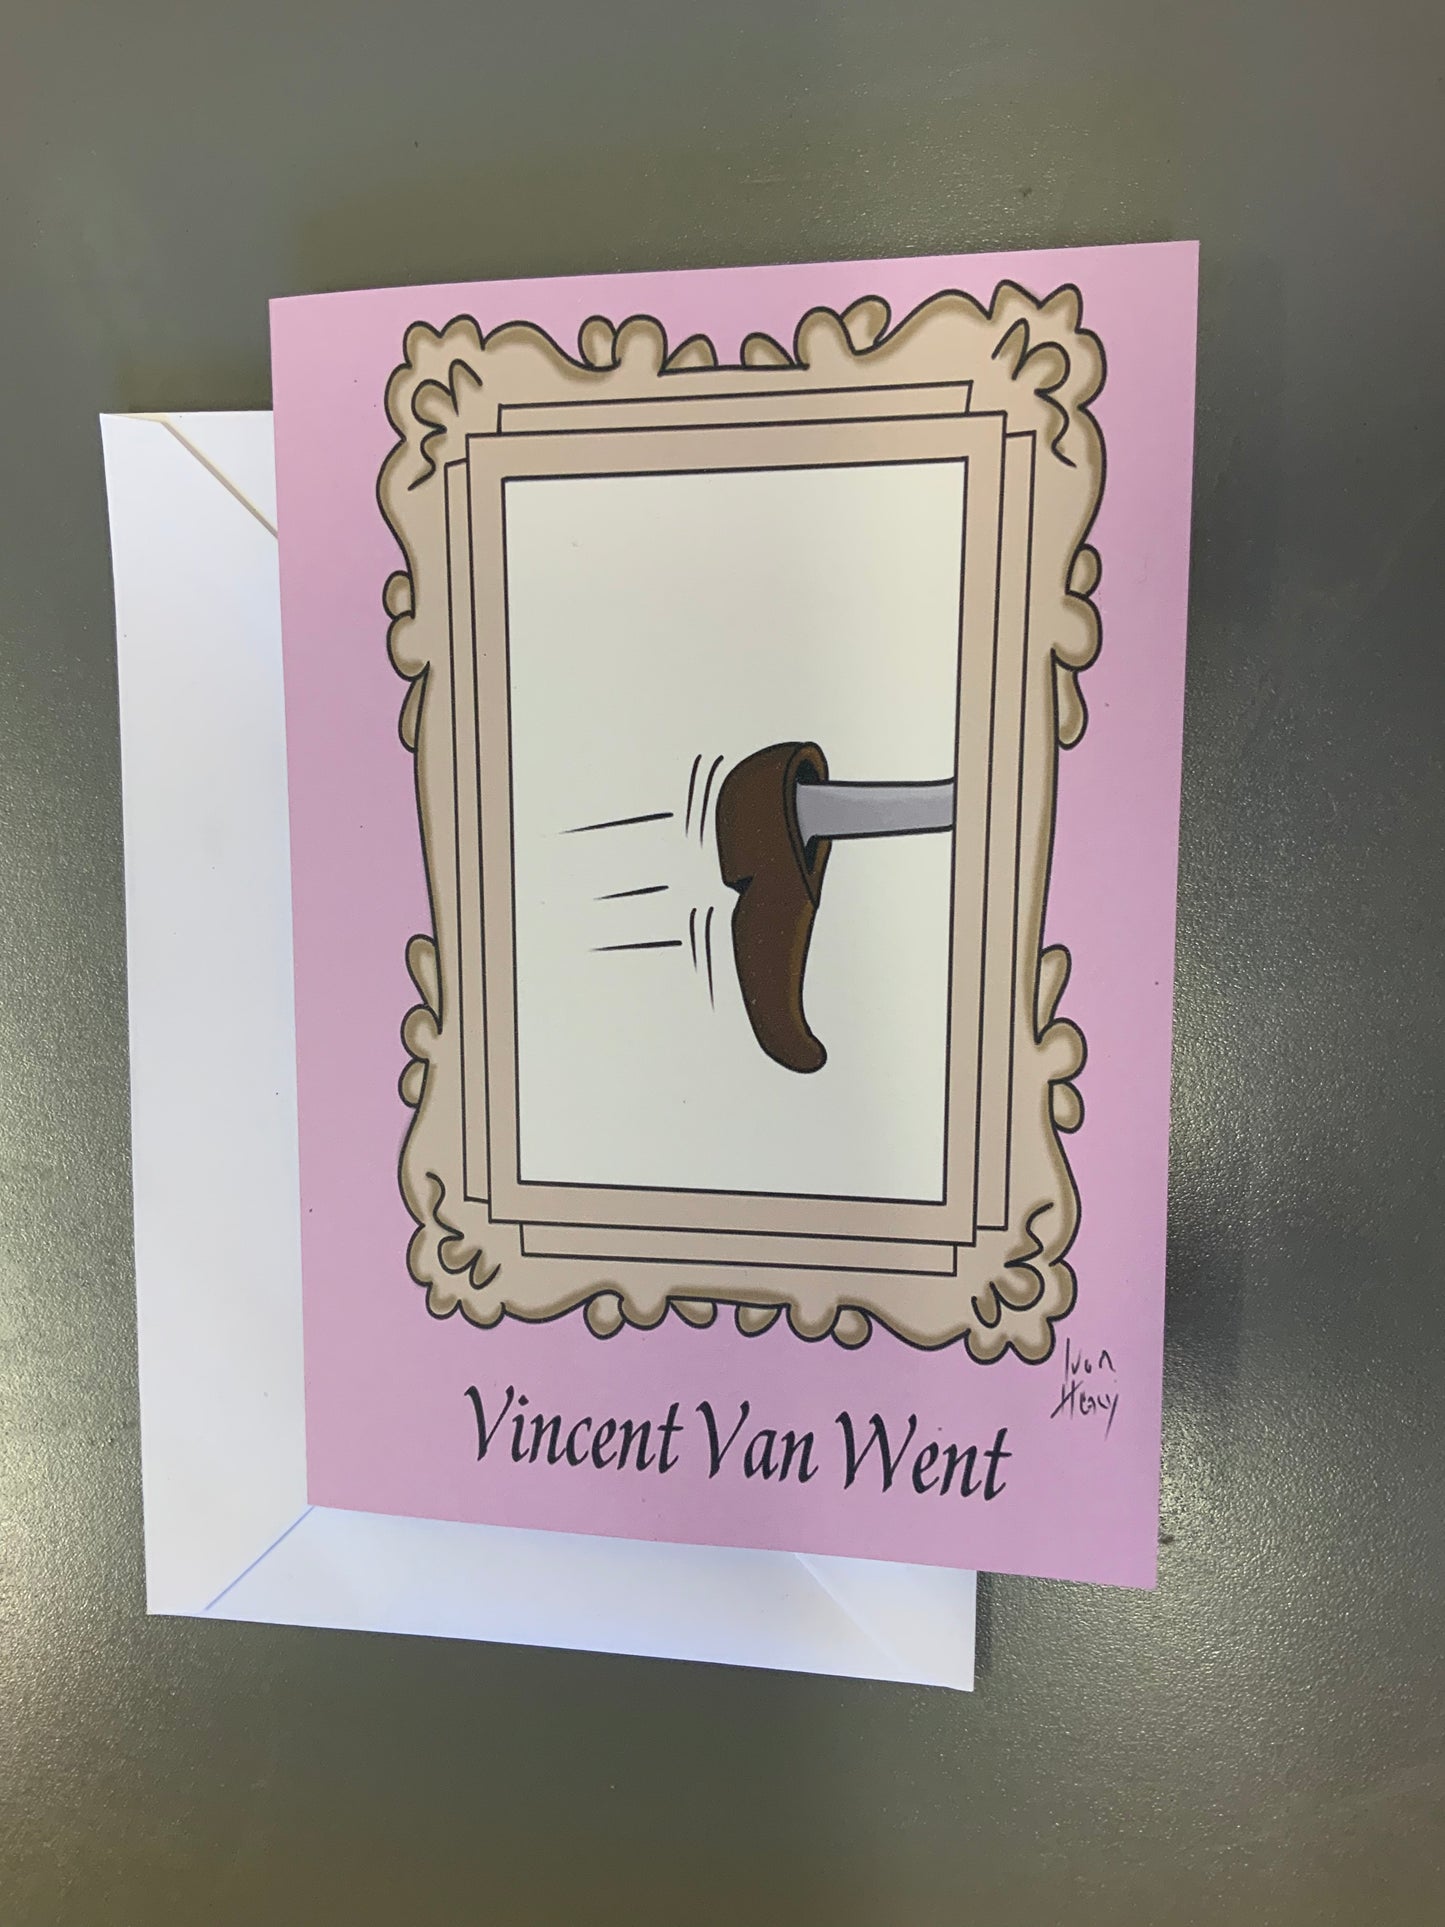 Vincent van went